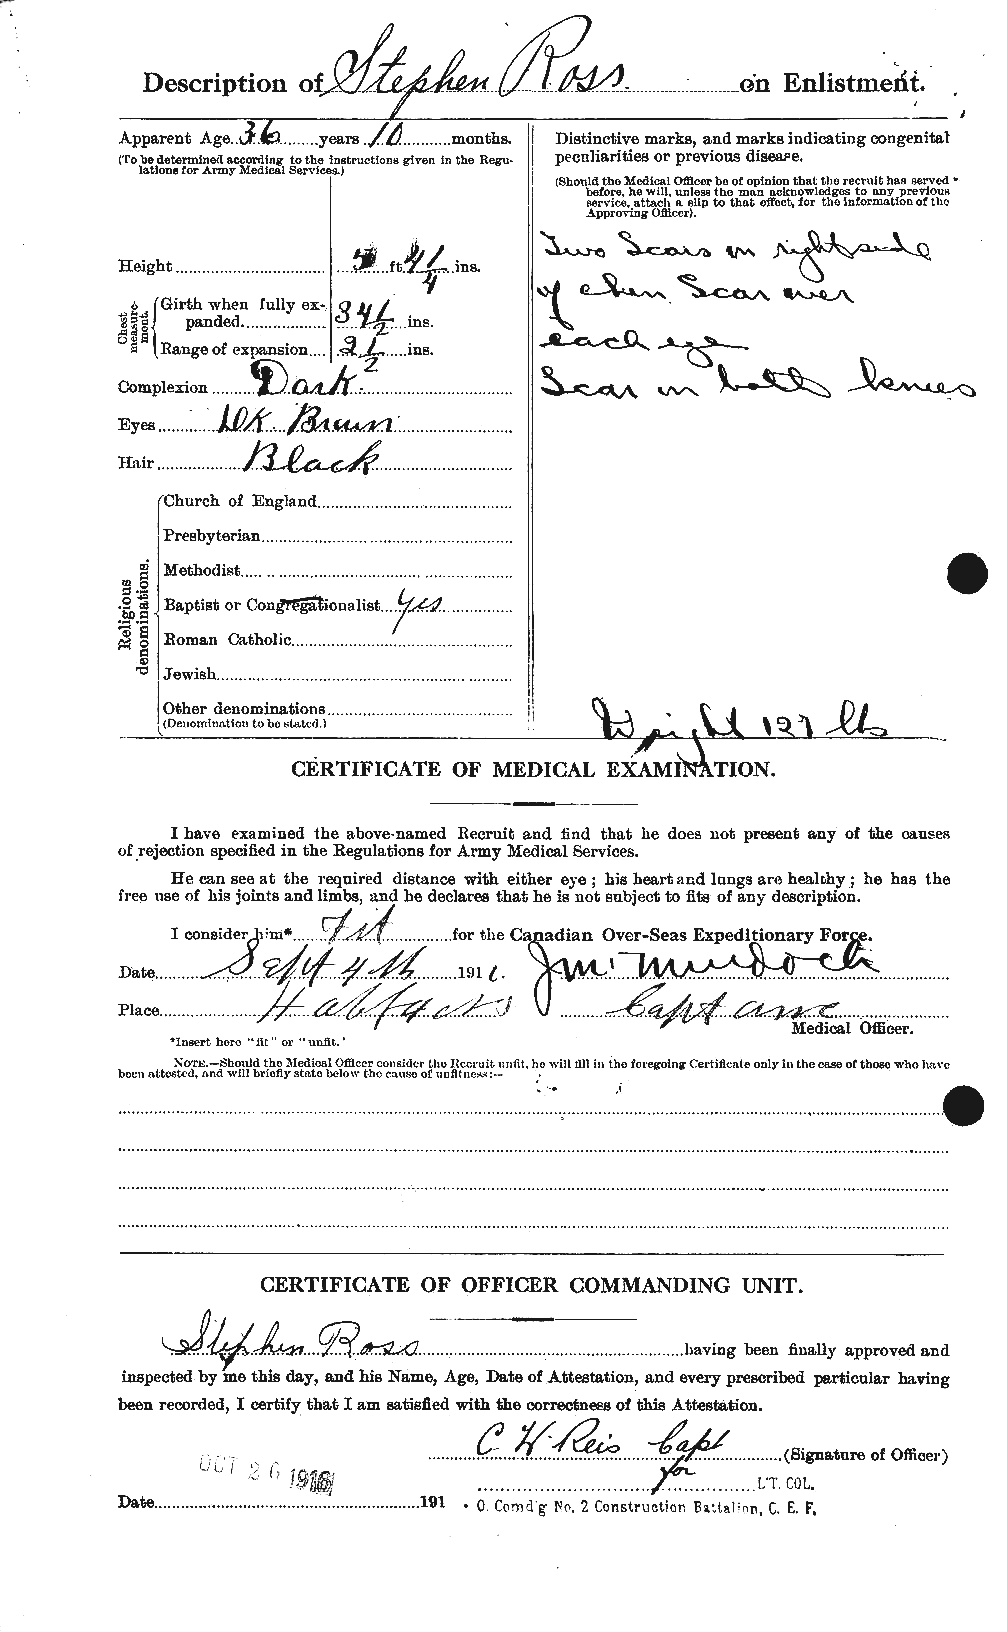 Dossiers du Personnel de la Première Guerre mondiale - CEC 614032b